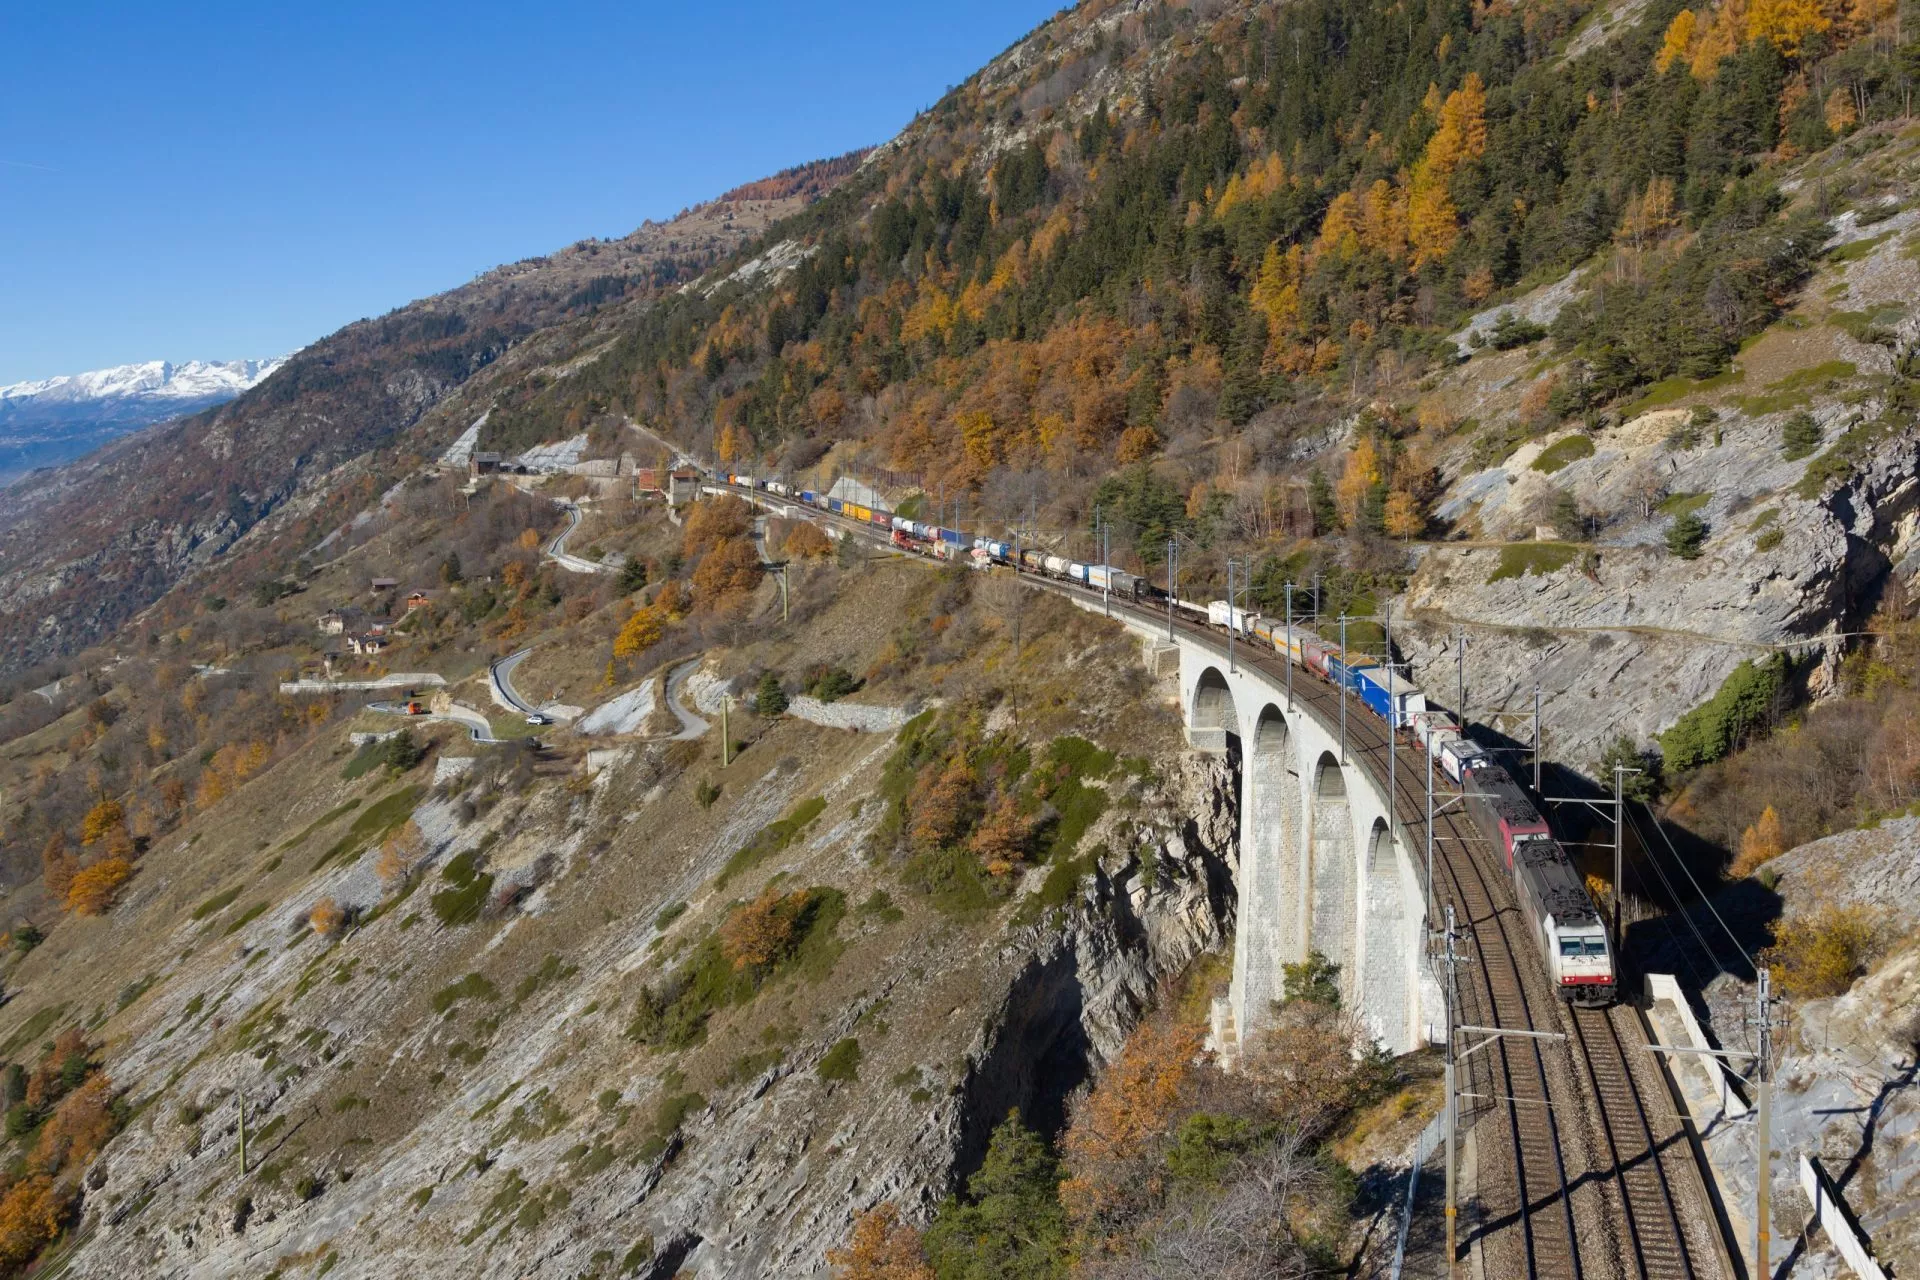 lotschbergin rautatie on yksi Alppien tärkeimmistä rautateistä